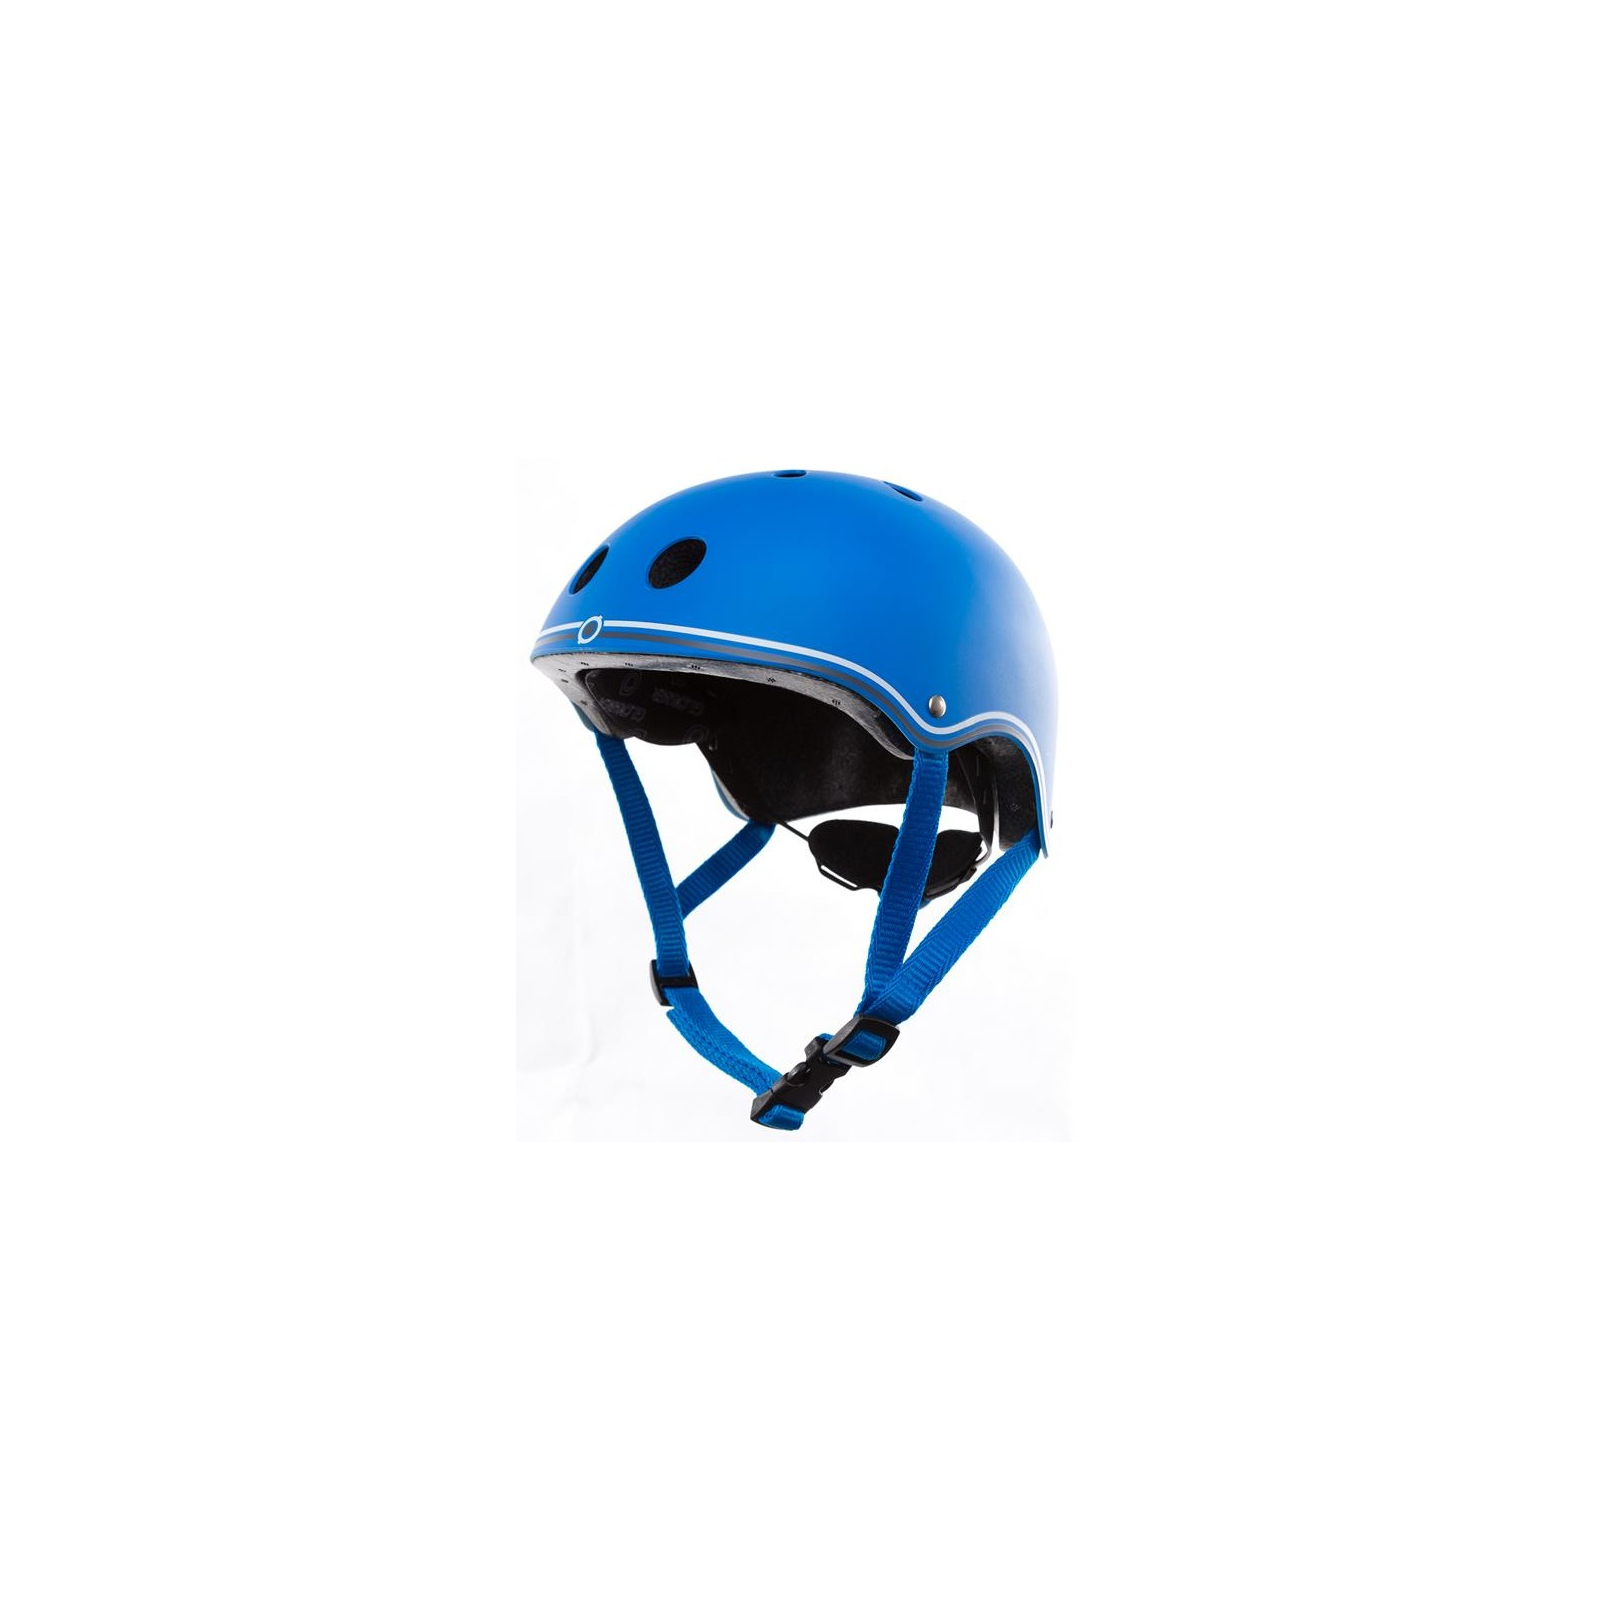 Шлем Globber защитный Синий 51-54см (XS) (500-100)